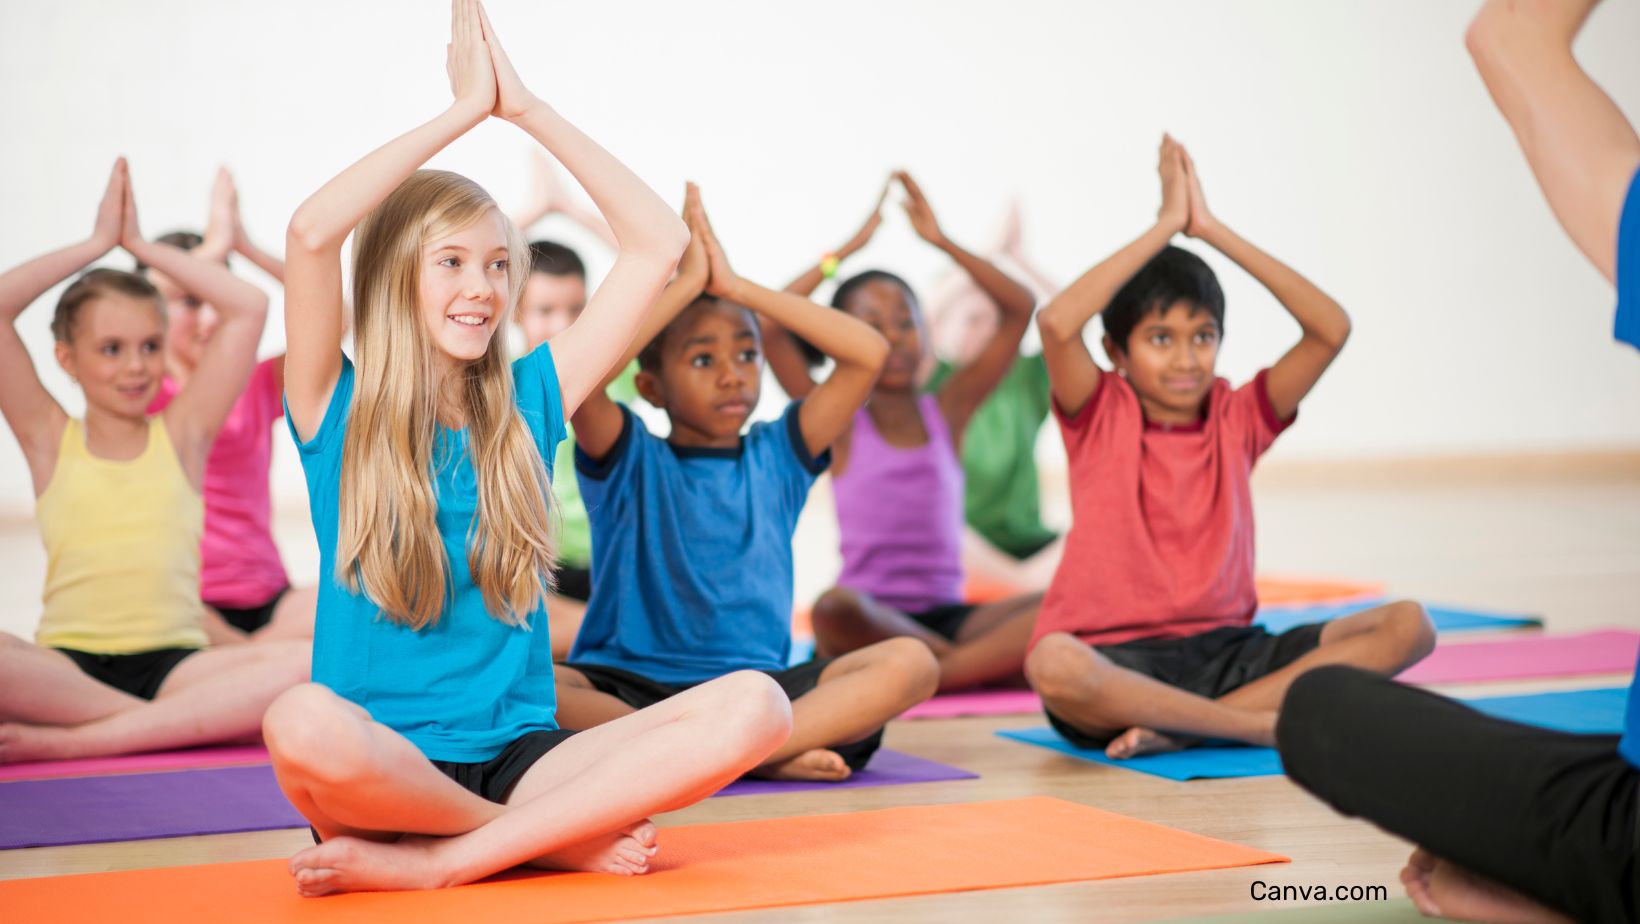 enfants souriants de toutes origines ethniques pratiquant un cours de yoga